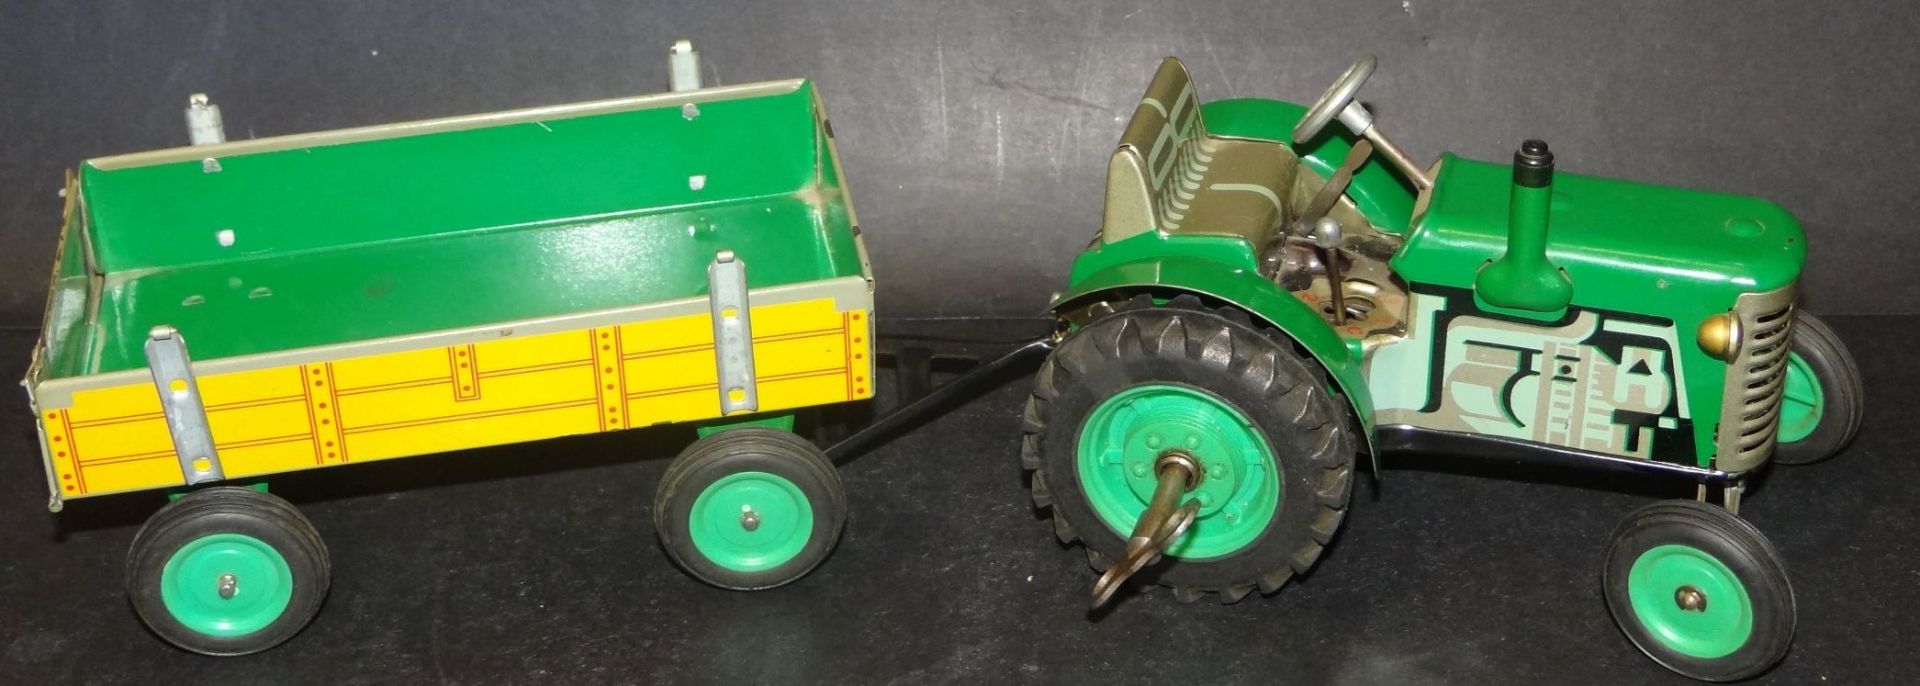 Blechtraktor "Zetor" mit Anhänger, 2 Anwendungen, L-Traktor 15 cm, guter Zustand, Schlüsselwerk lä - Bild 2 aus 6